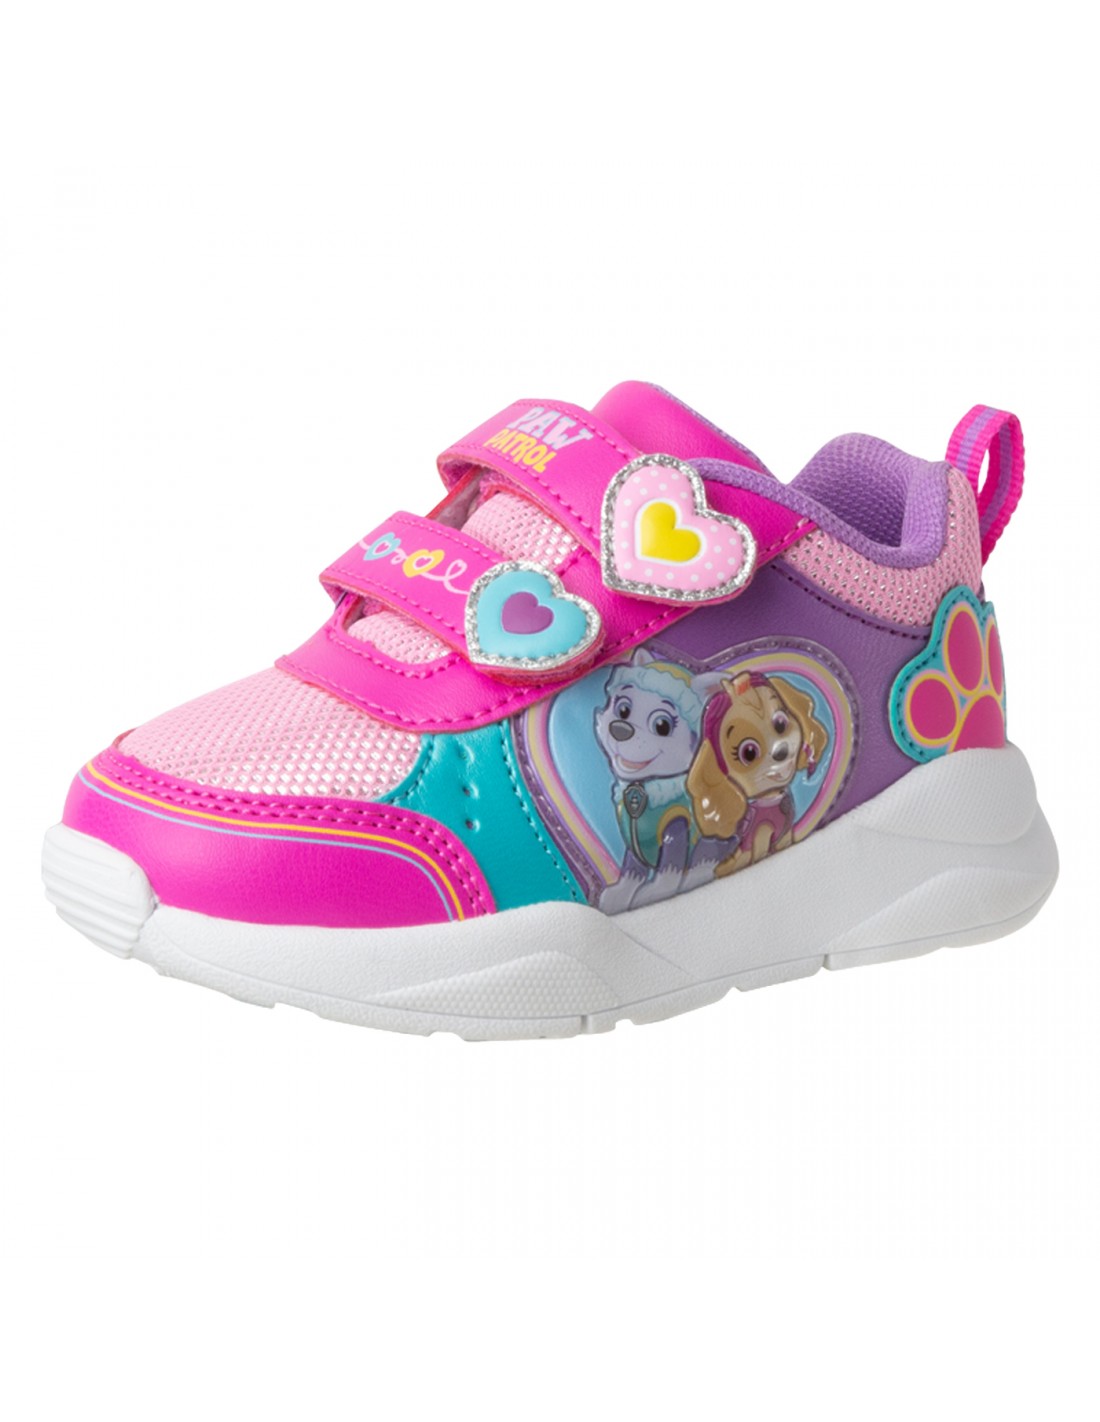 Zapatos Paw Patrol Runner para niña pequeña